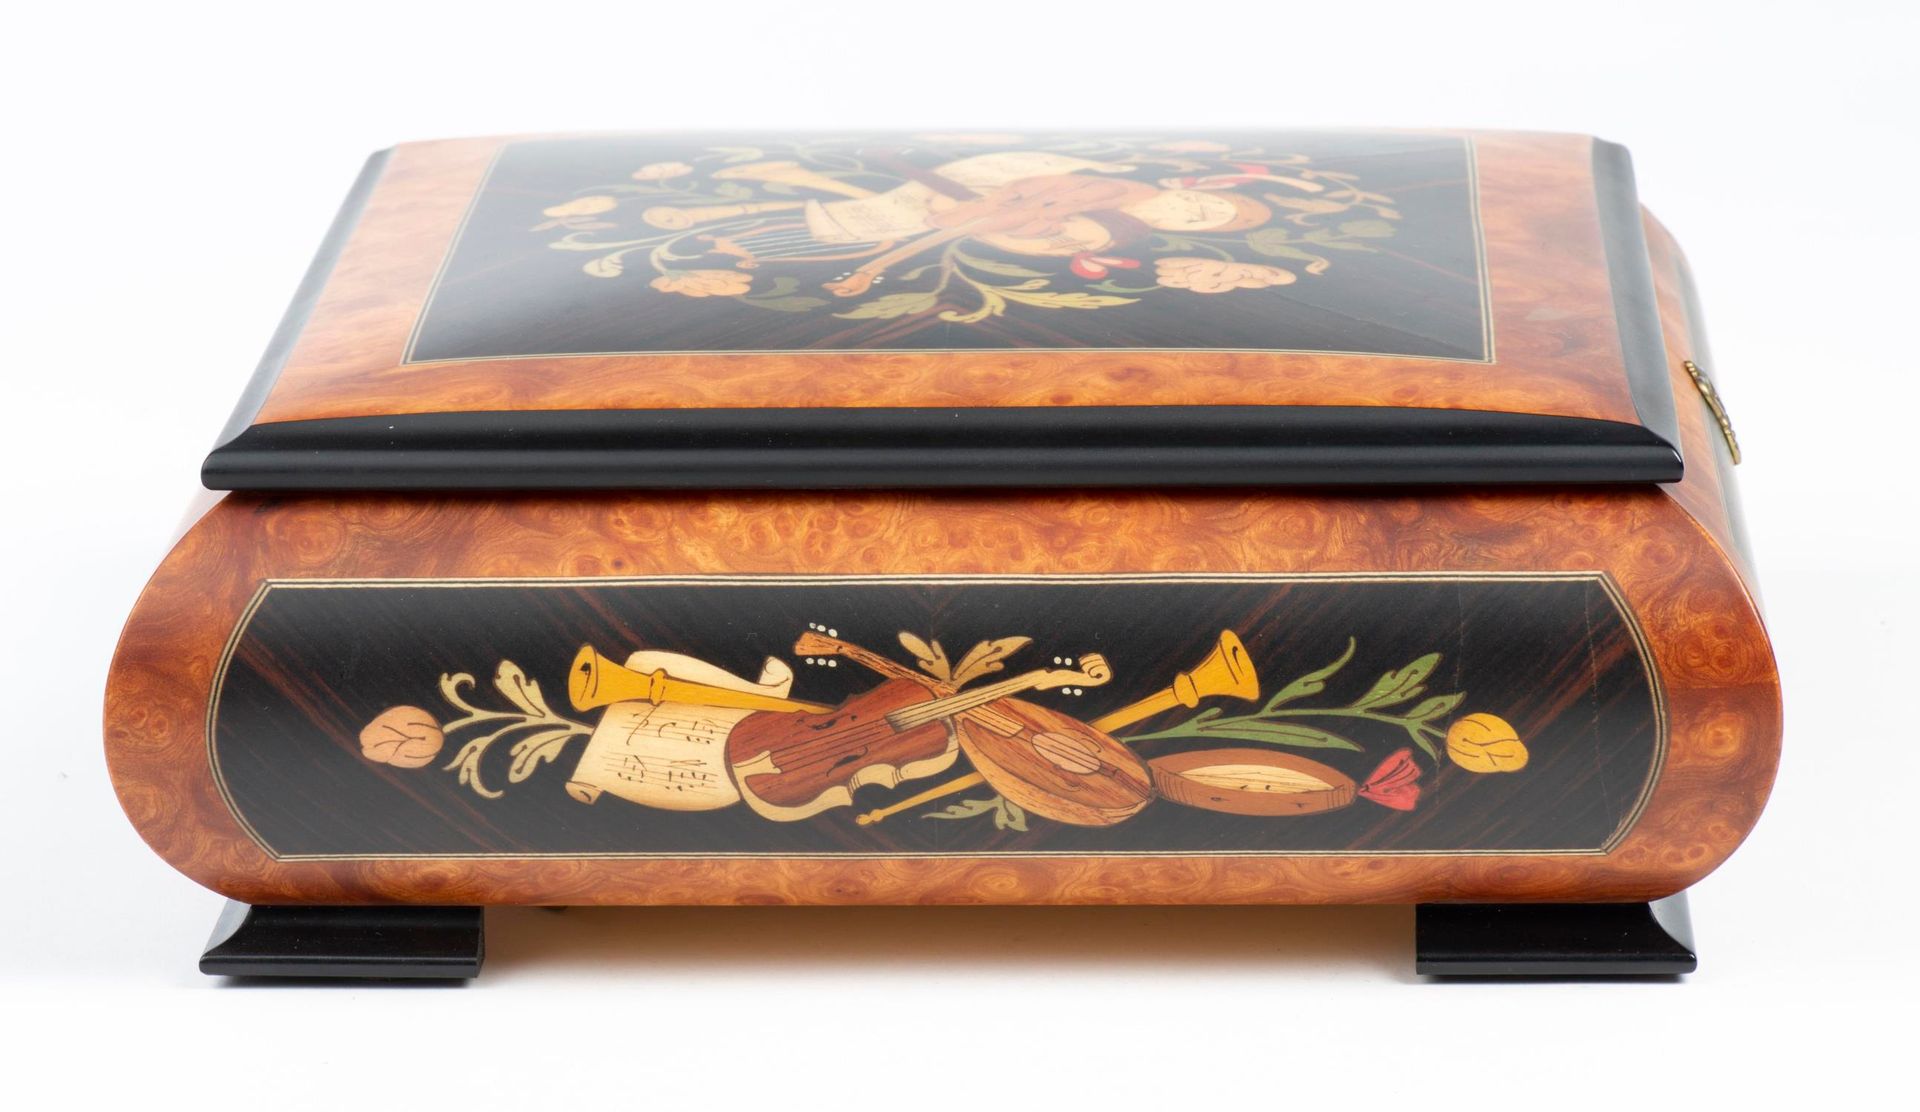 Null REUGE，木质和镶嵌装饰的音乐盒，72张幻灯片和3种旋律。

27 x 27 x 10 厘米